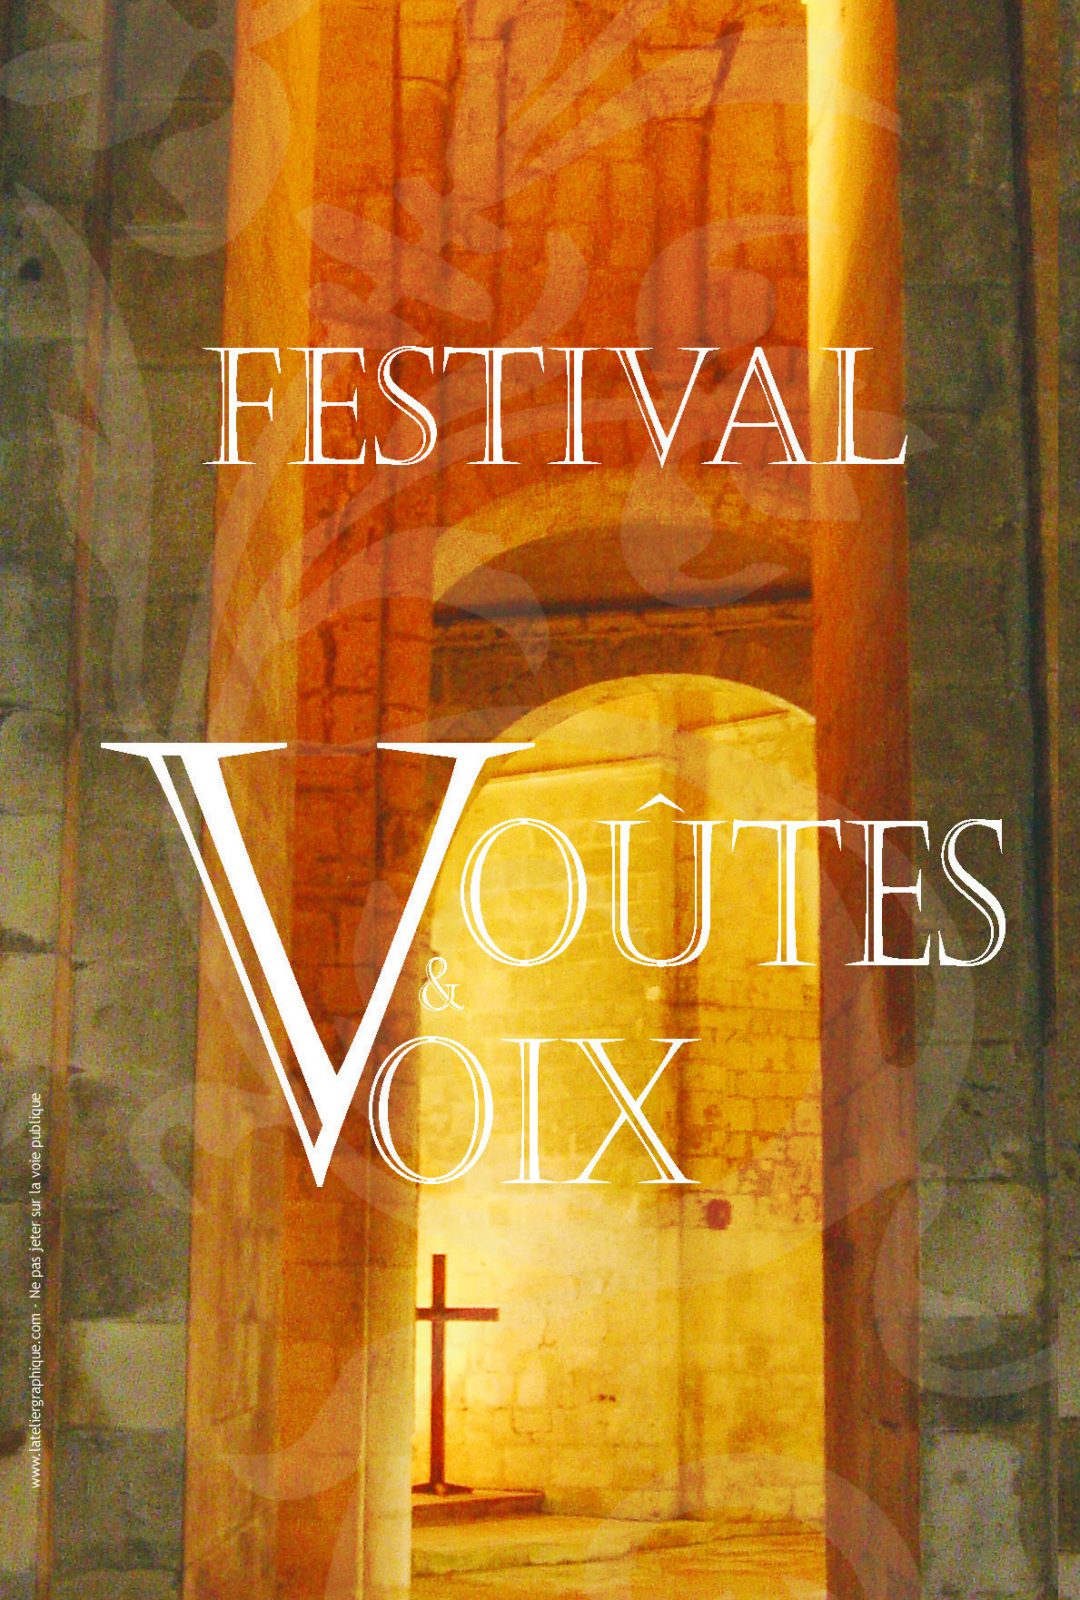 festival_voutes_voix_generique